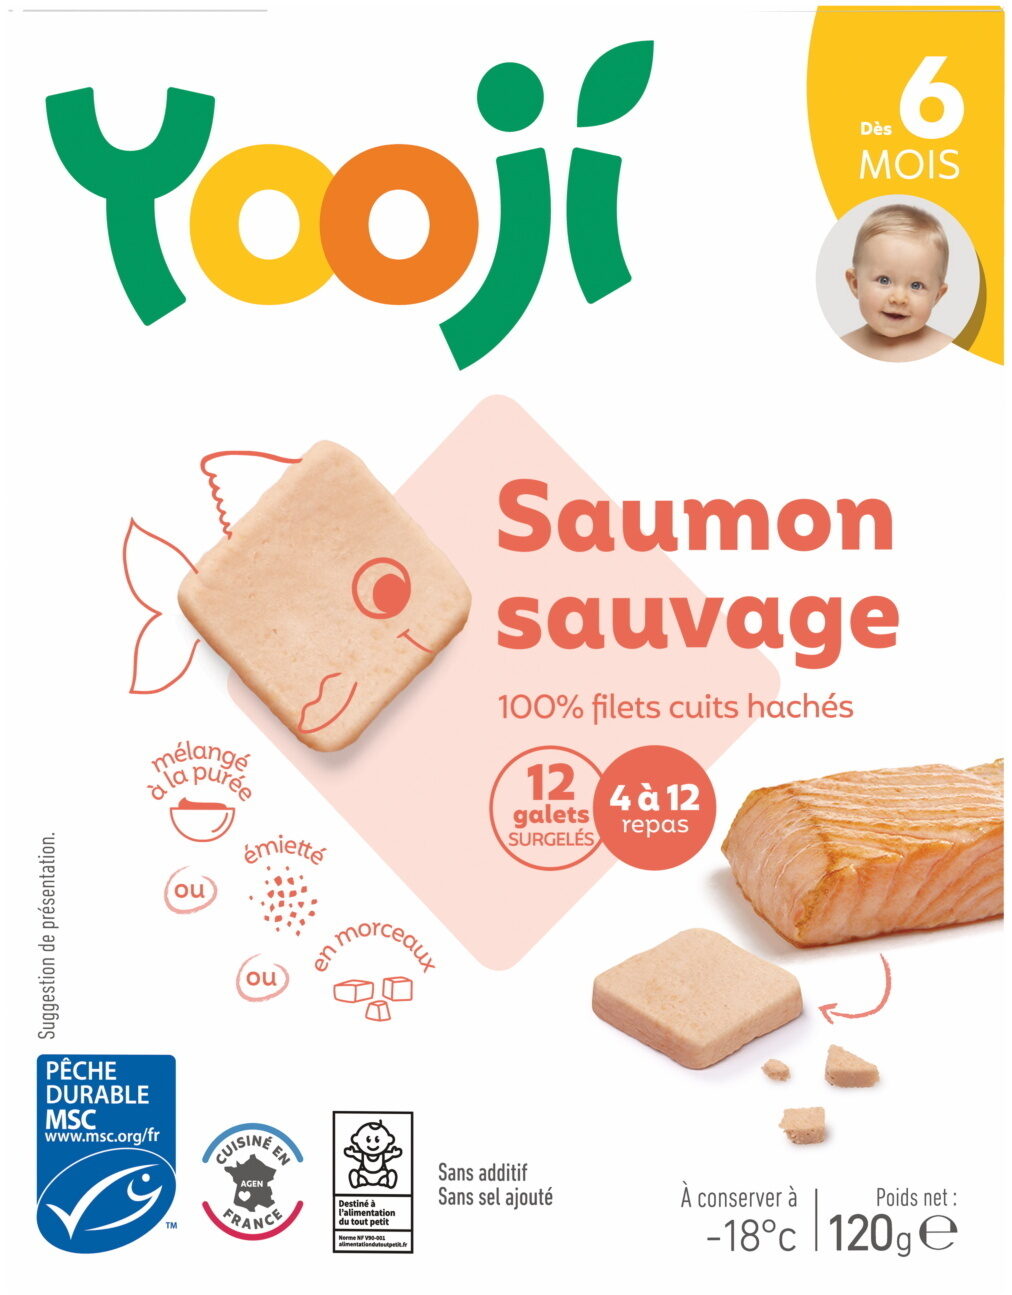 Hachés de saumon sauvage - 16 galets - نتاج - fr